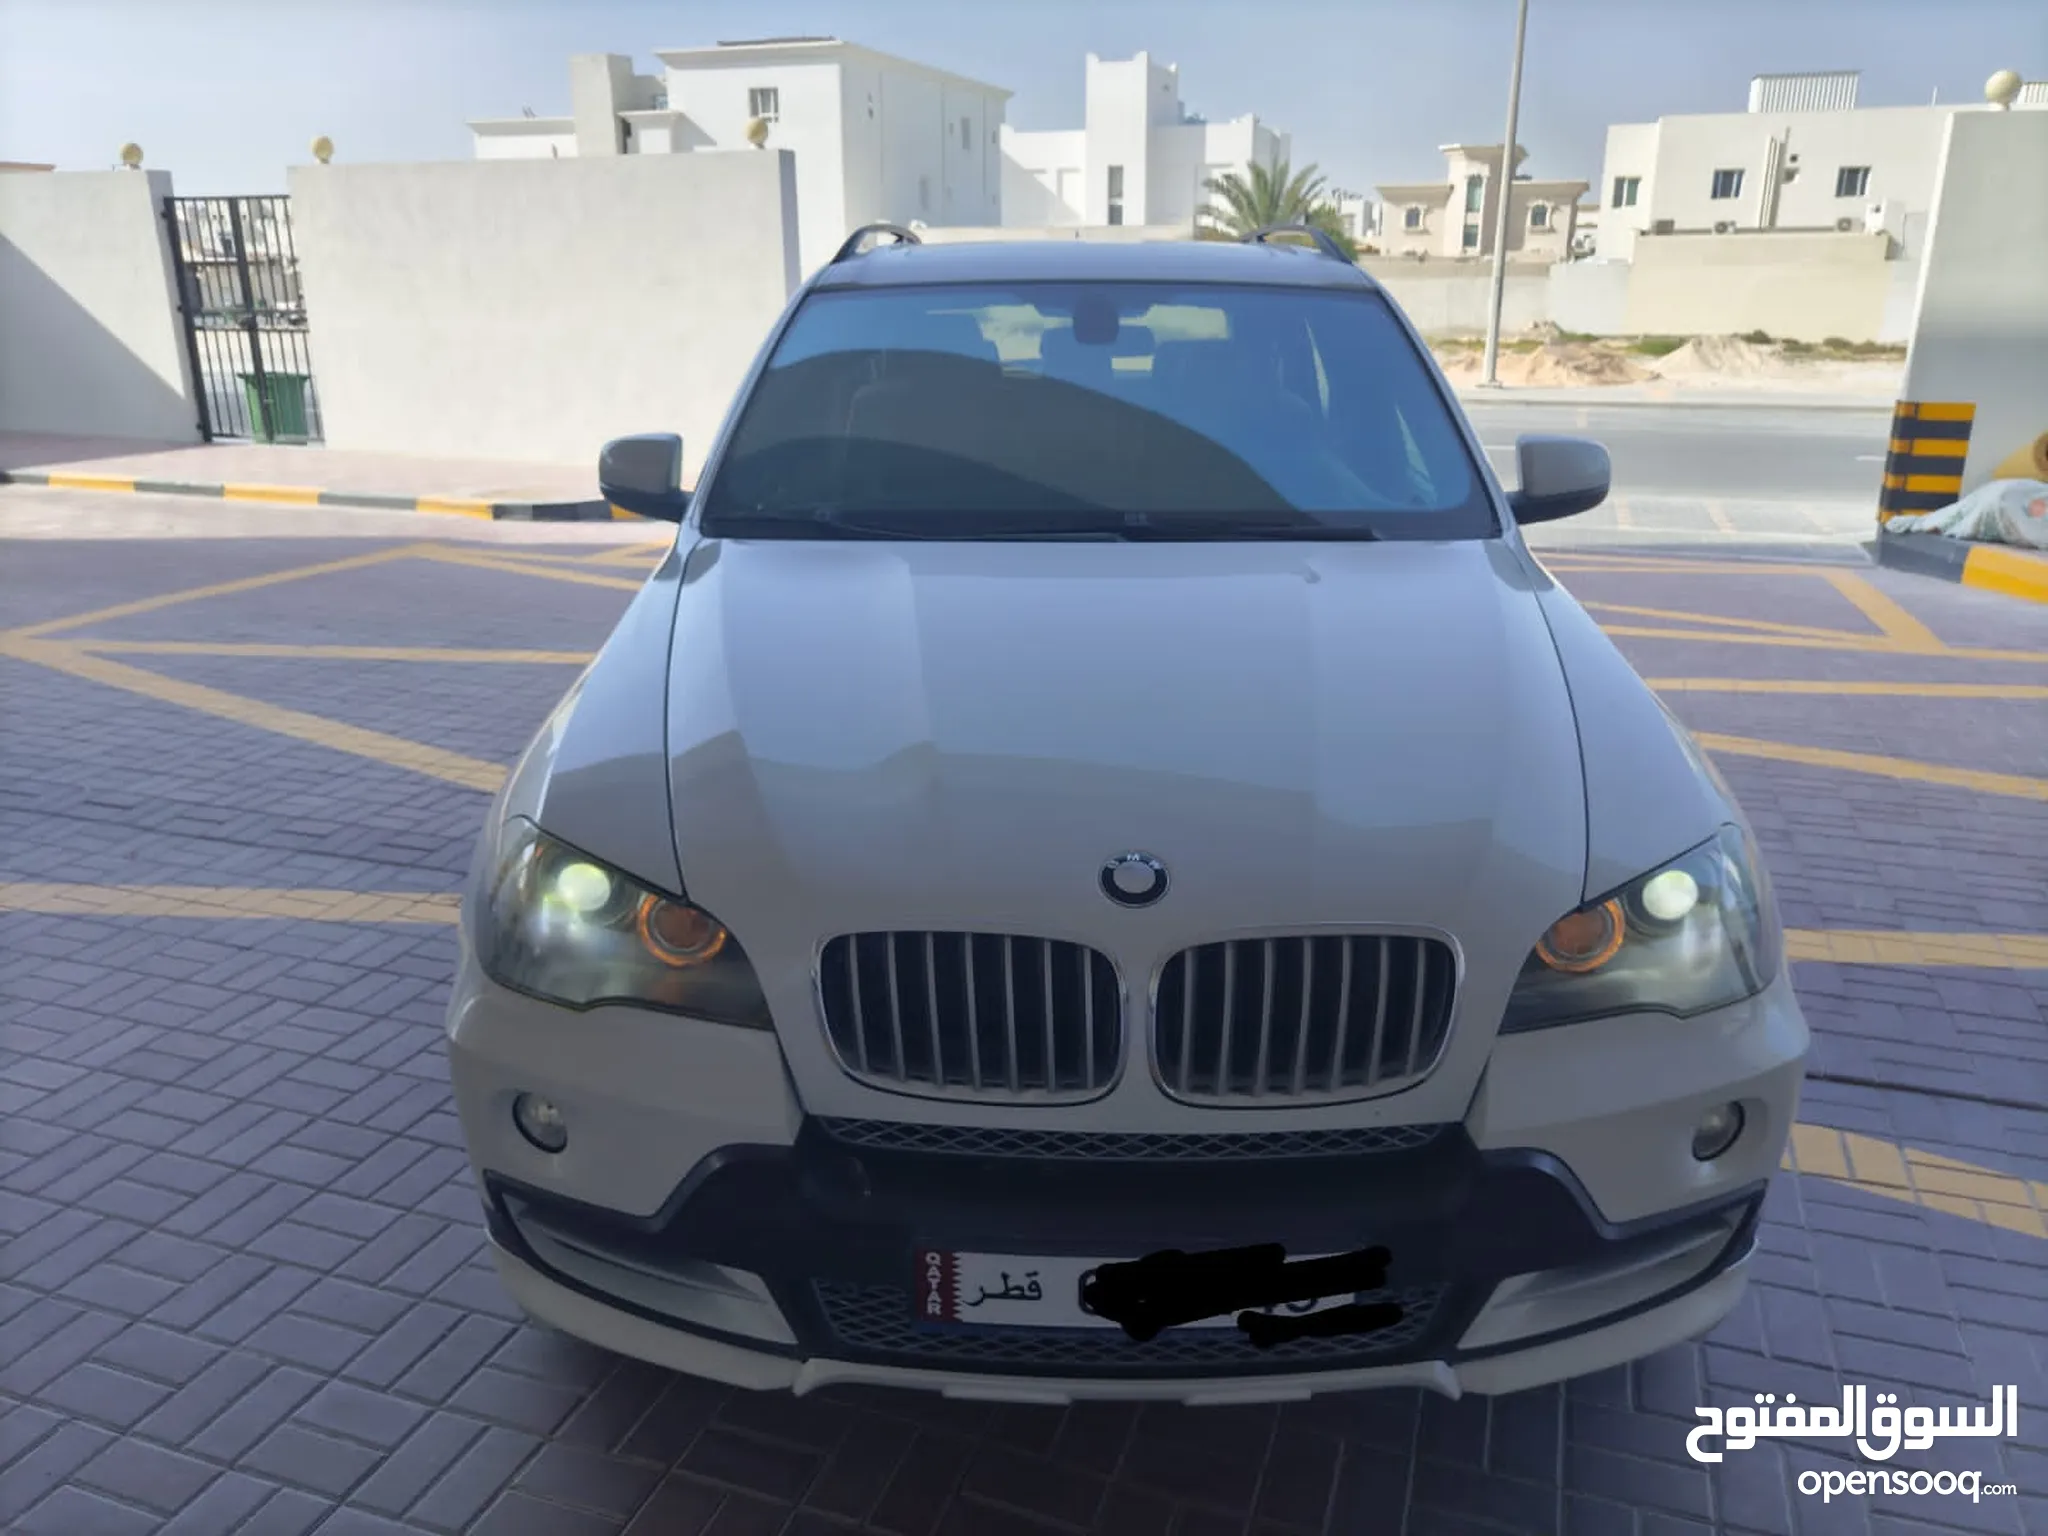 سيارات للبيع في قطر | سوق سيارات قطر | مستعملة وجديدة رخيصة | أسعار تنافسية  | السوق المفتوح